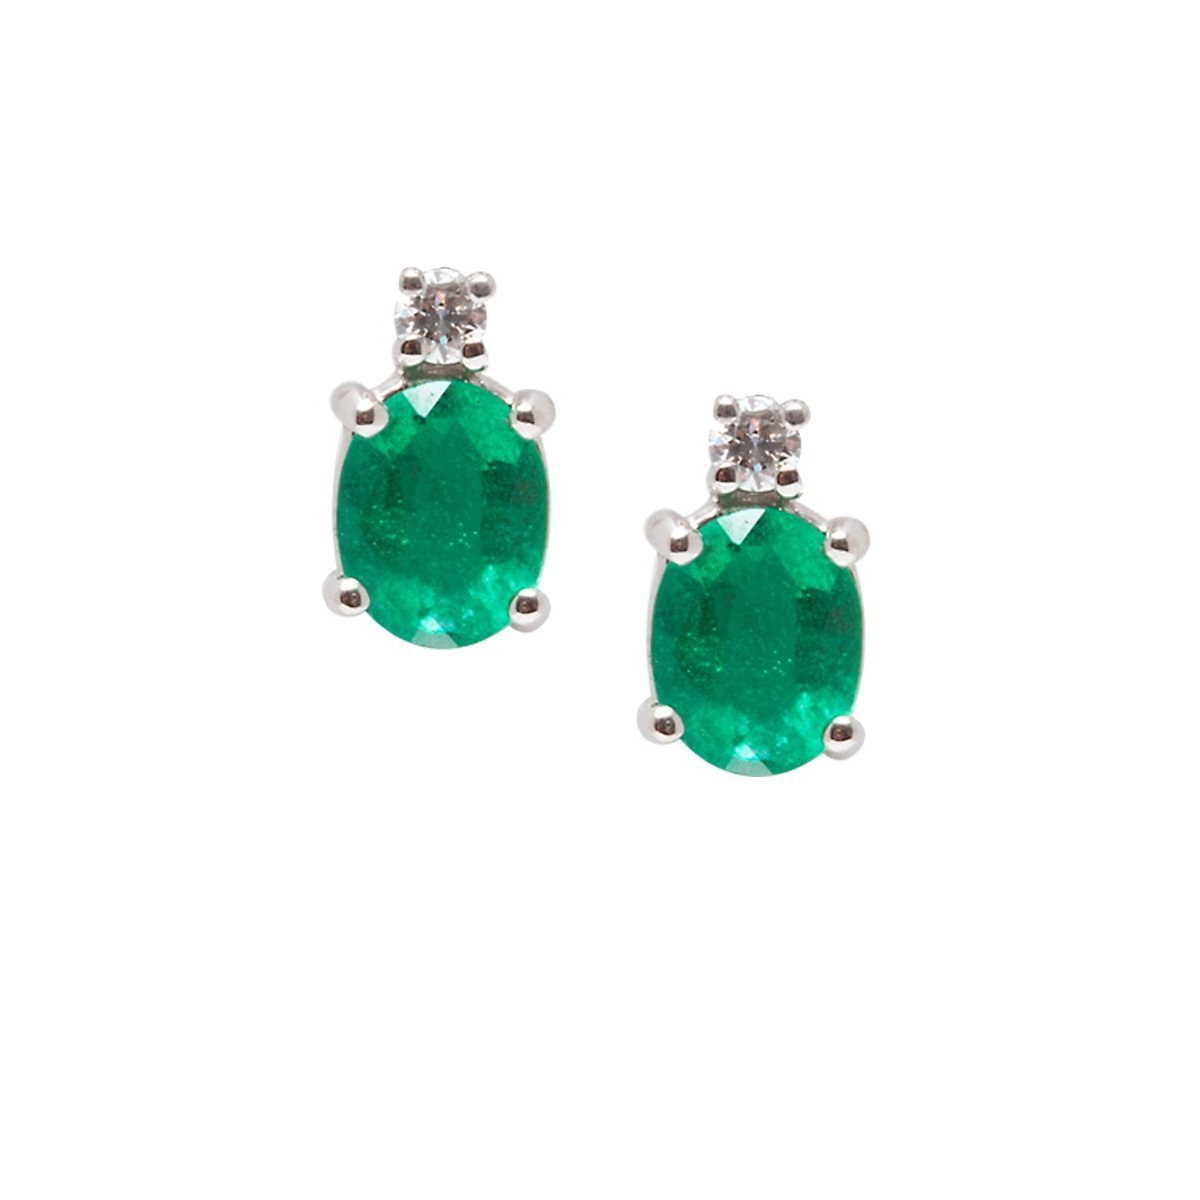 Davite e Delucchi orecchini di smeraldi - Simmi gioiellerie -Orecchini